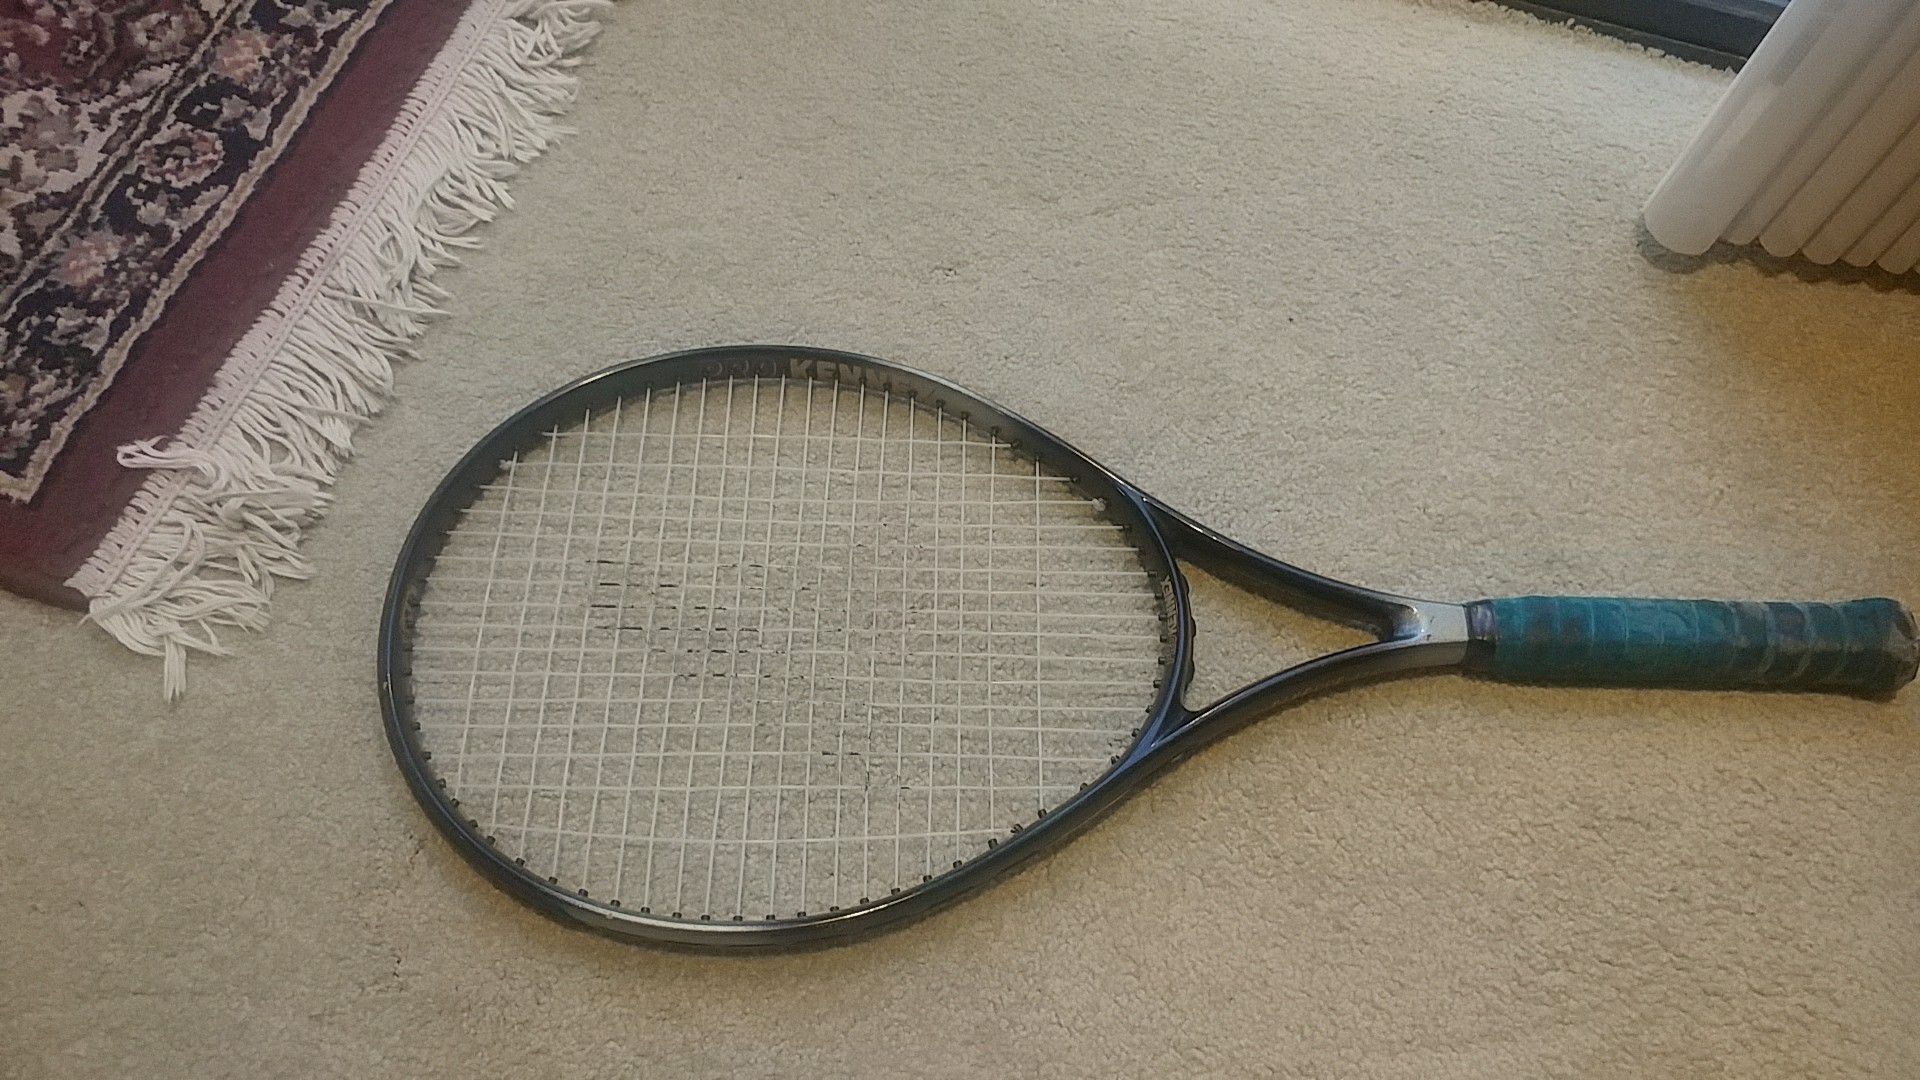 Pro kennex tennis racket